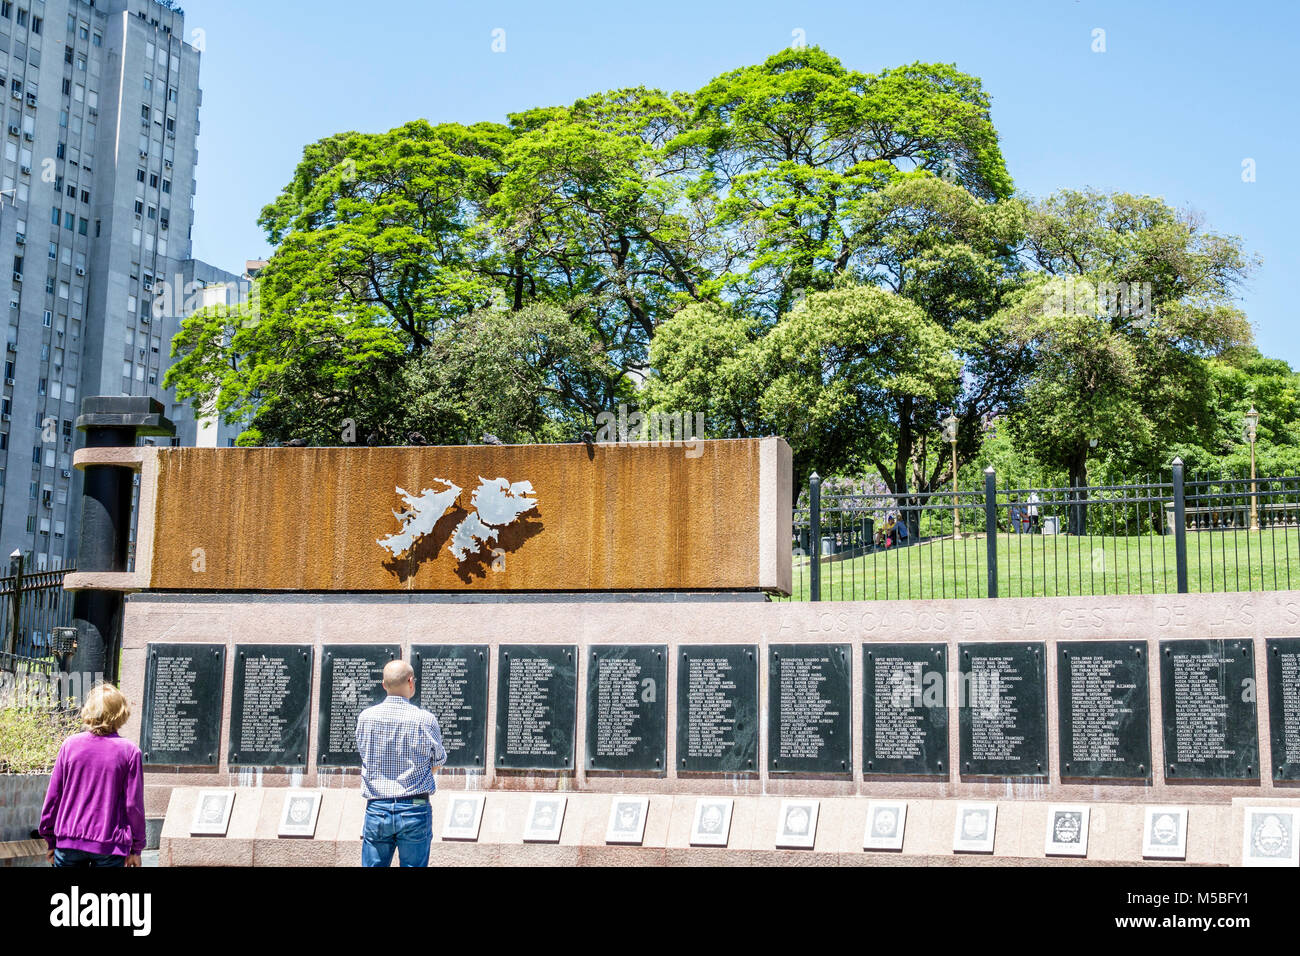 Buenos Aires Argentina, Plaza San Martin, parco, monumento ai caduti in Malvinas Monumento a los Caidos en Malvinas Falklands Guerra tomba vuota, ispanico L Foto Stock